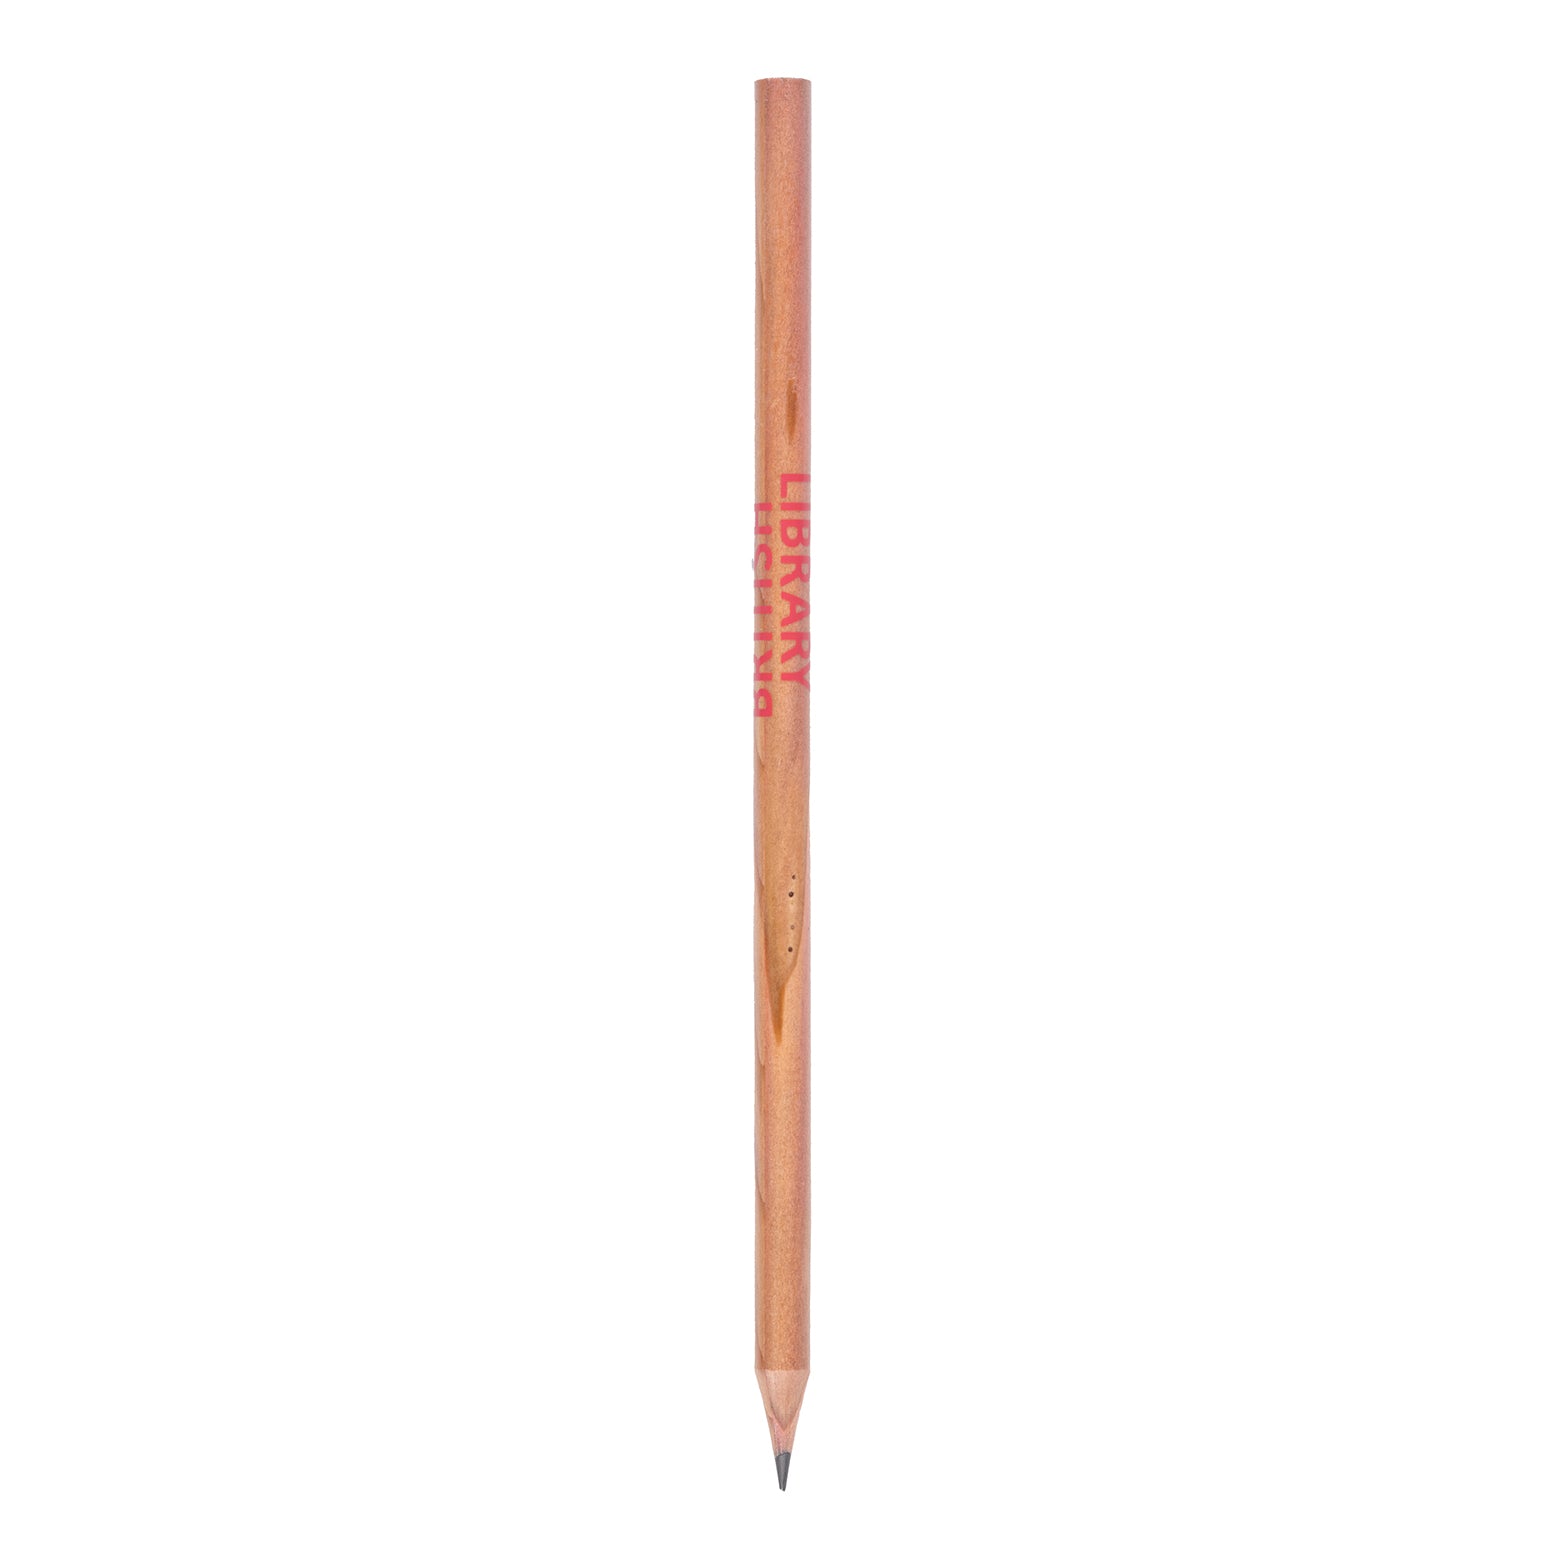 Coral Eco British Library Pencil